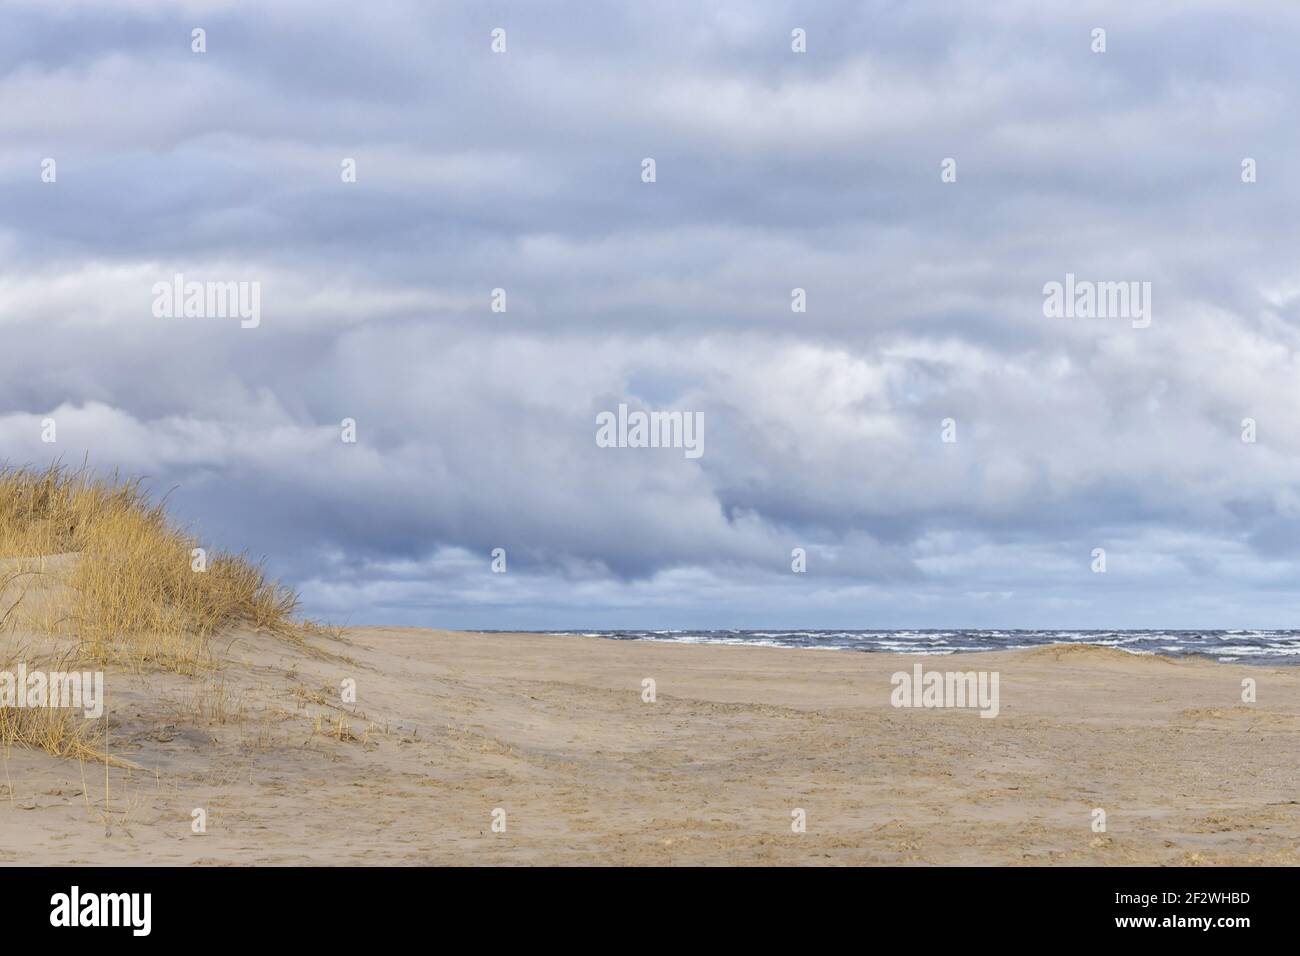 Schönes raues Meer mit Wellen und Sandstrand mit Schilf und trockenem Gras. Stockfoto